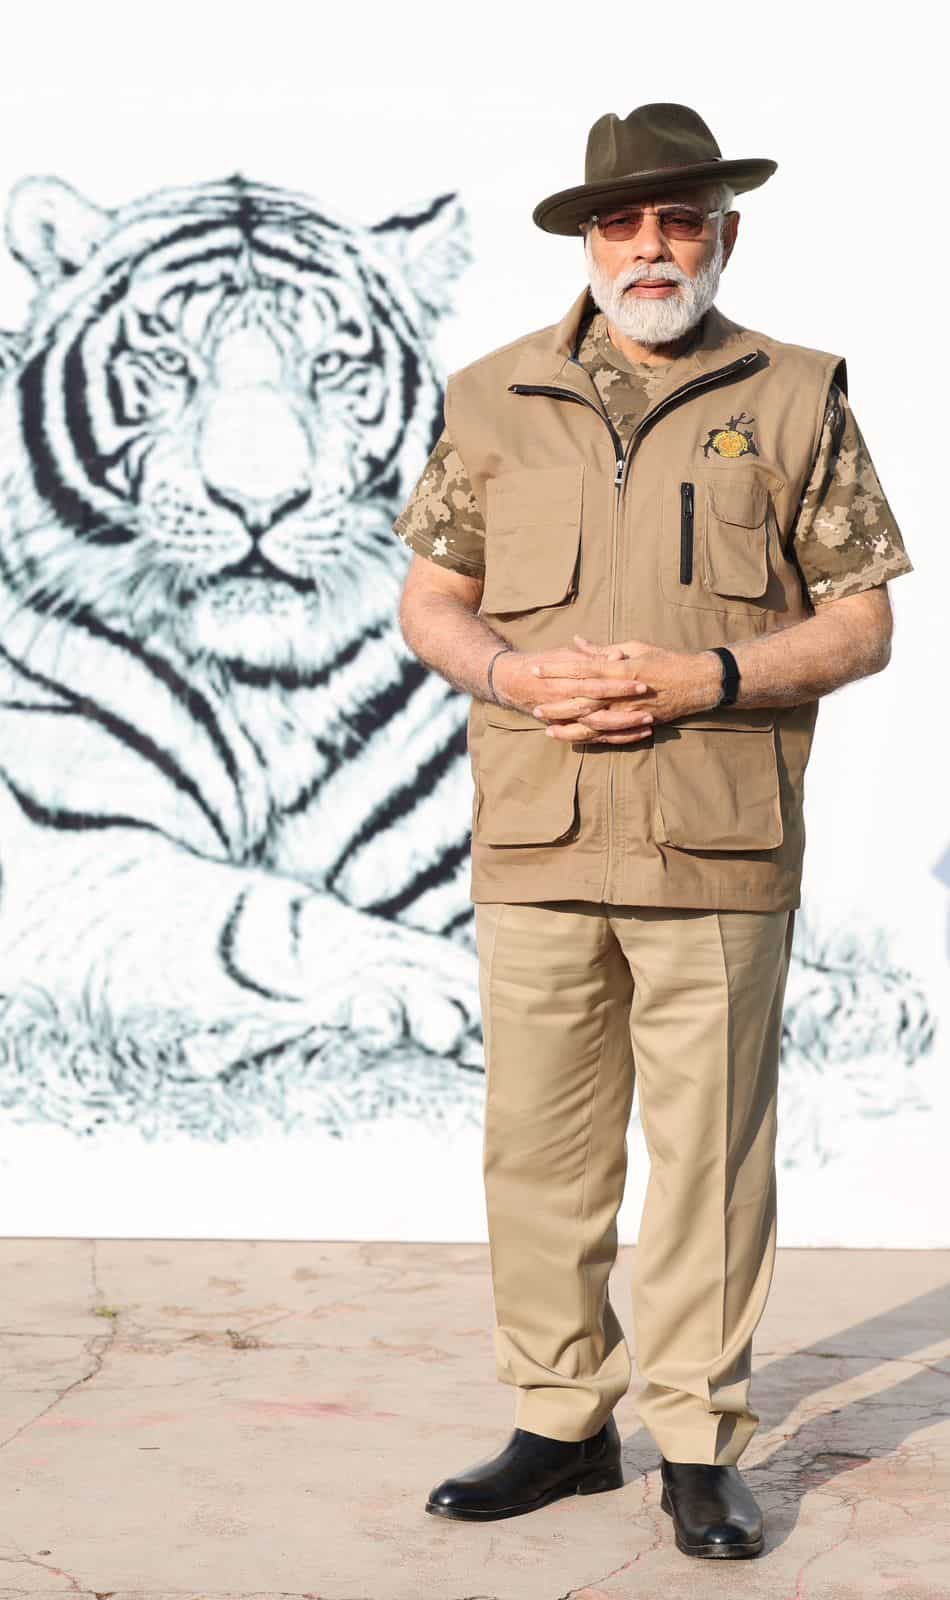 About Bandipur Tiger Reserve Karnataka